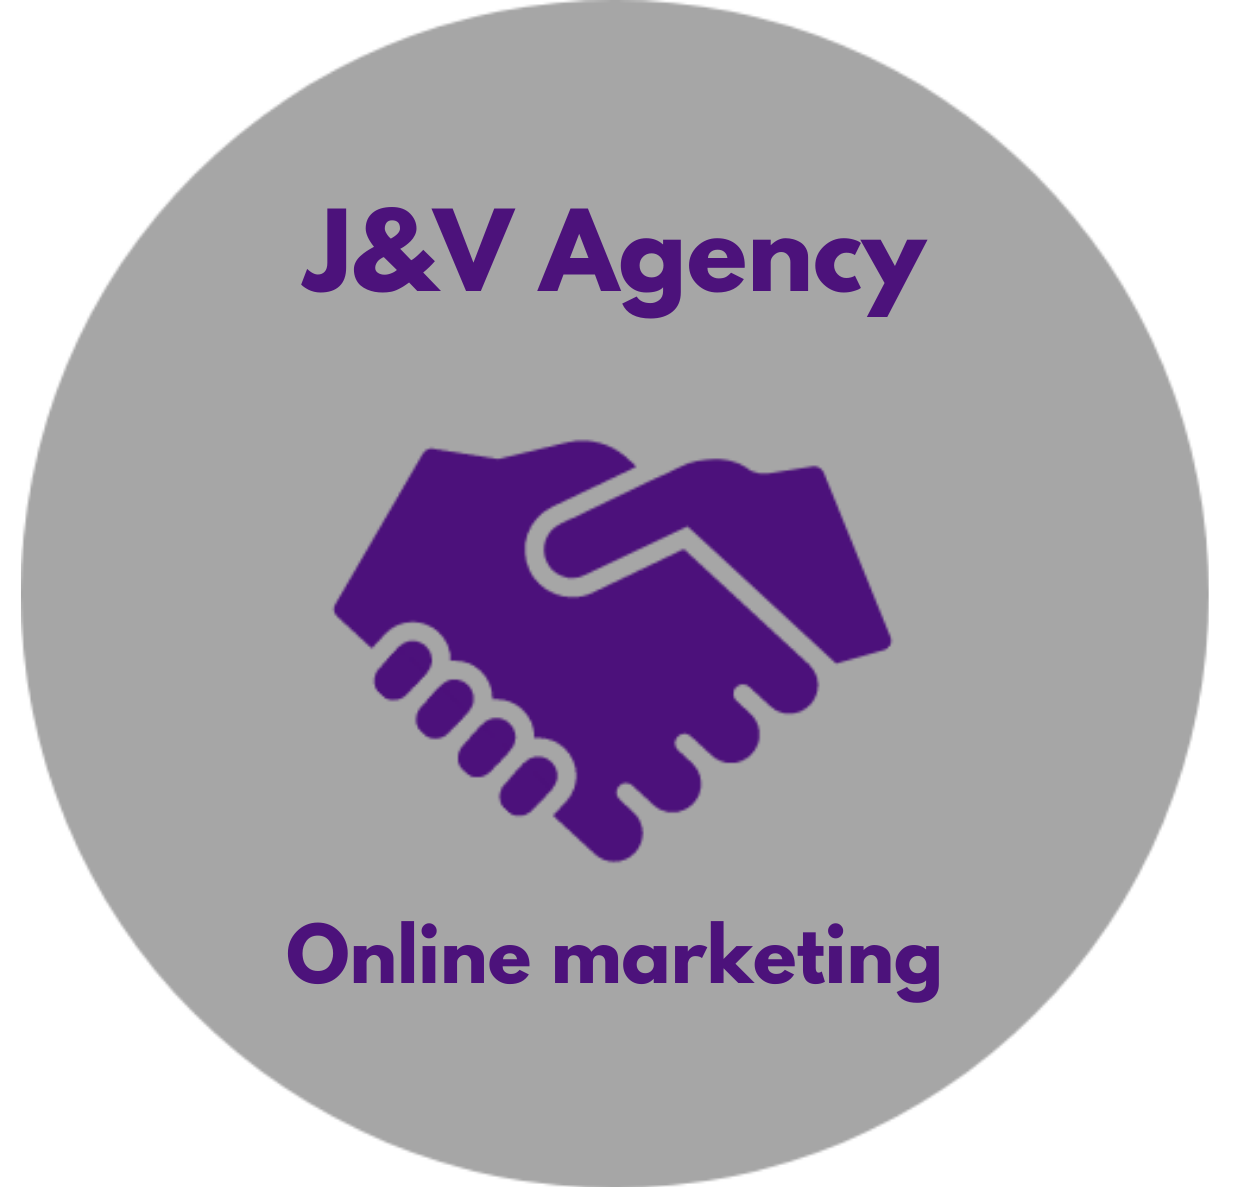 J&V Agency